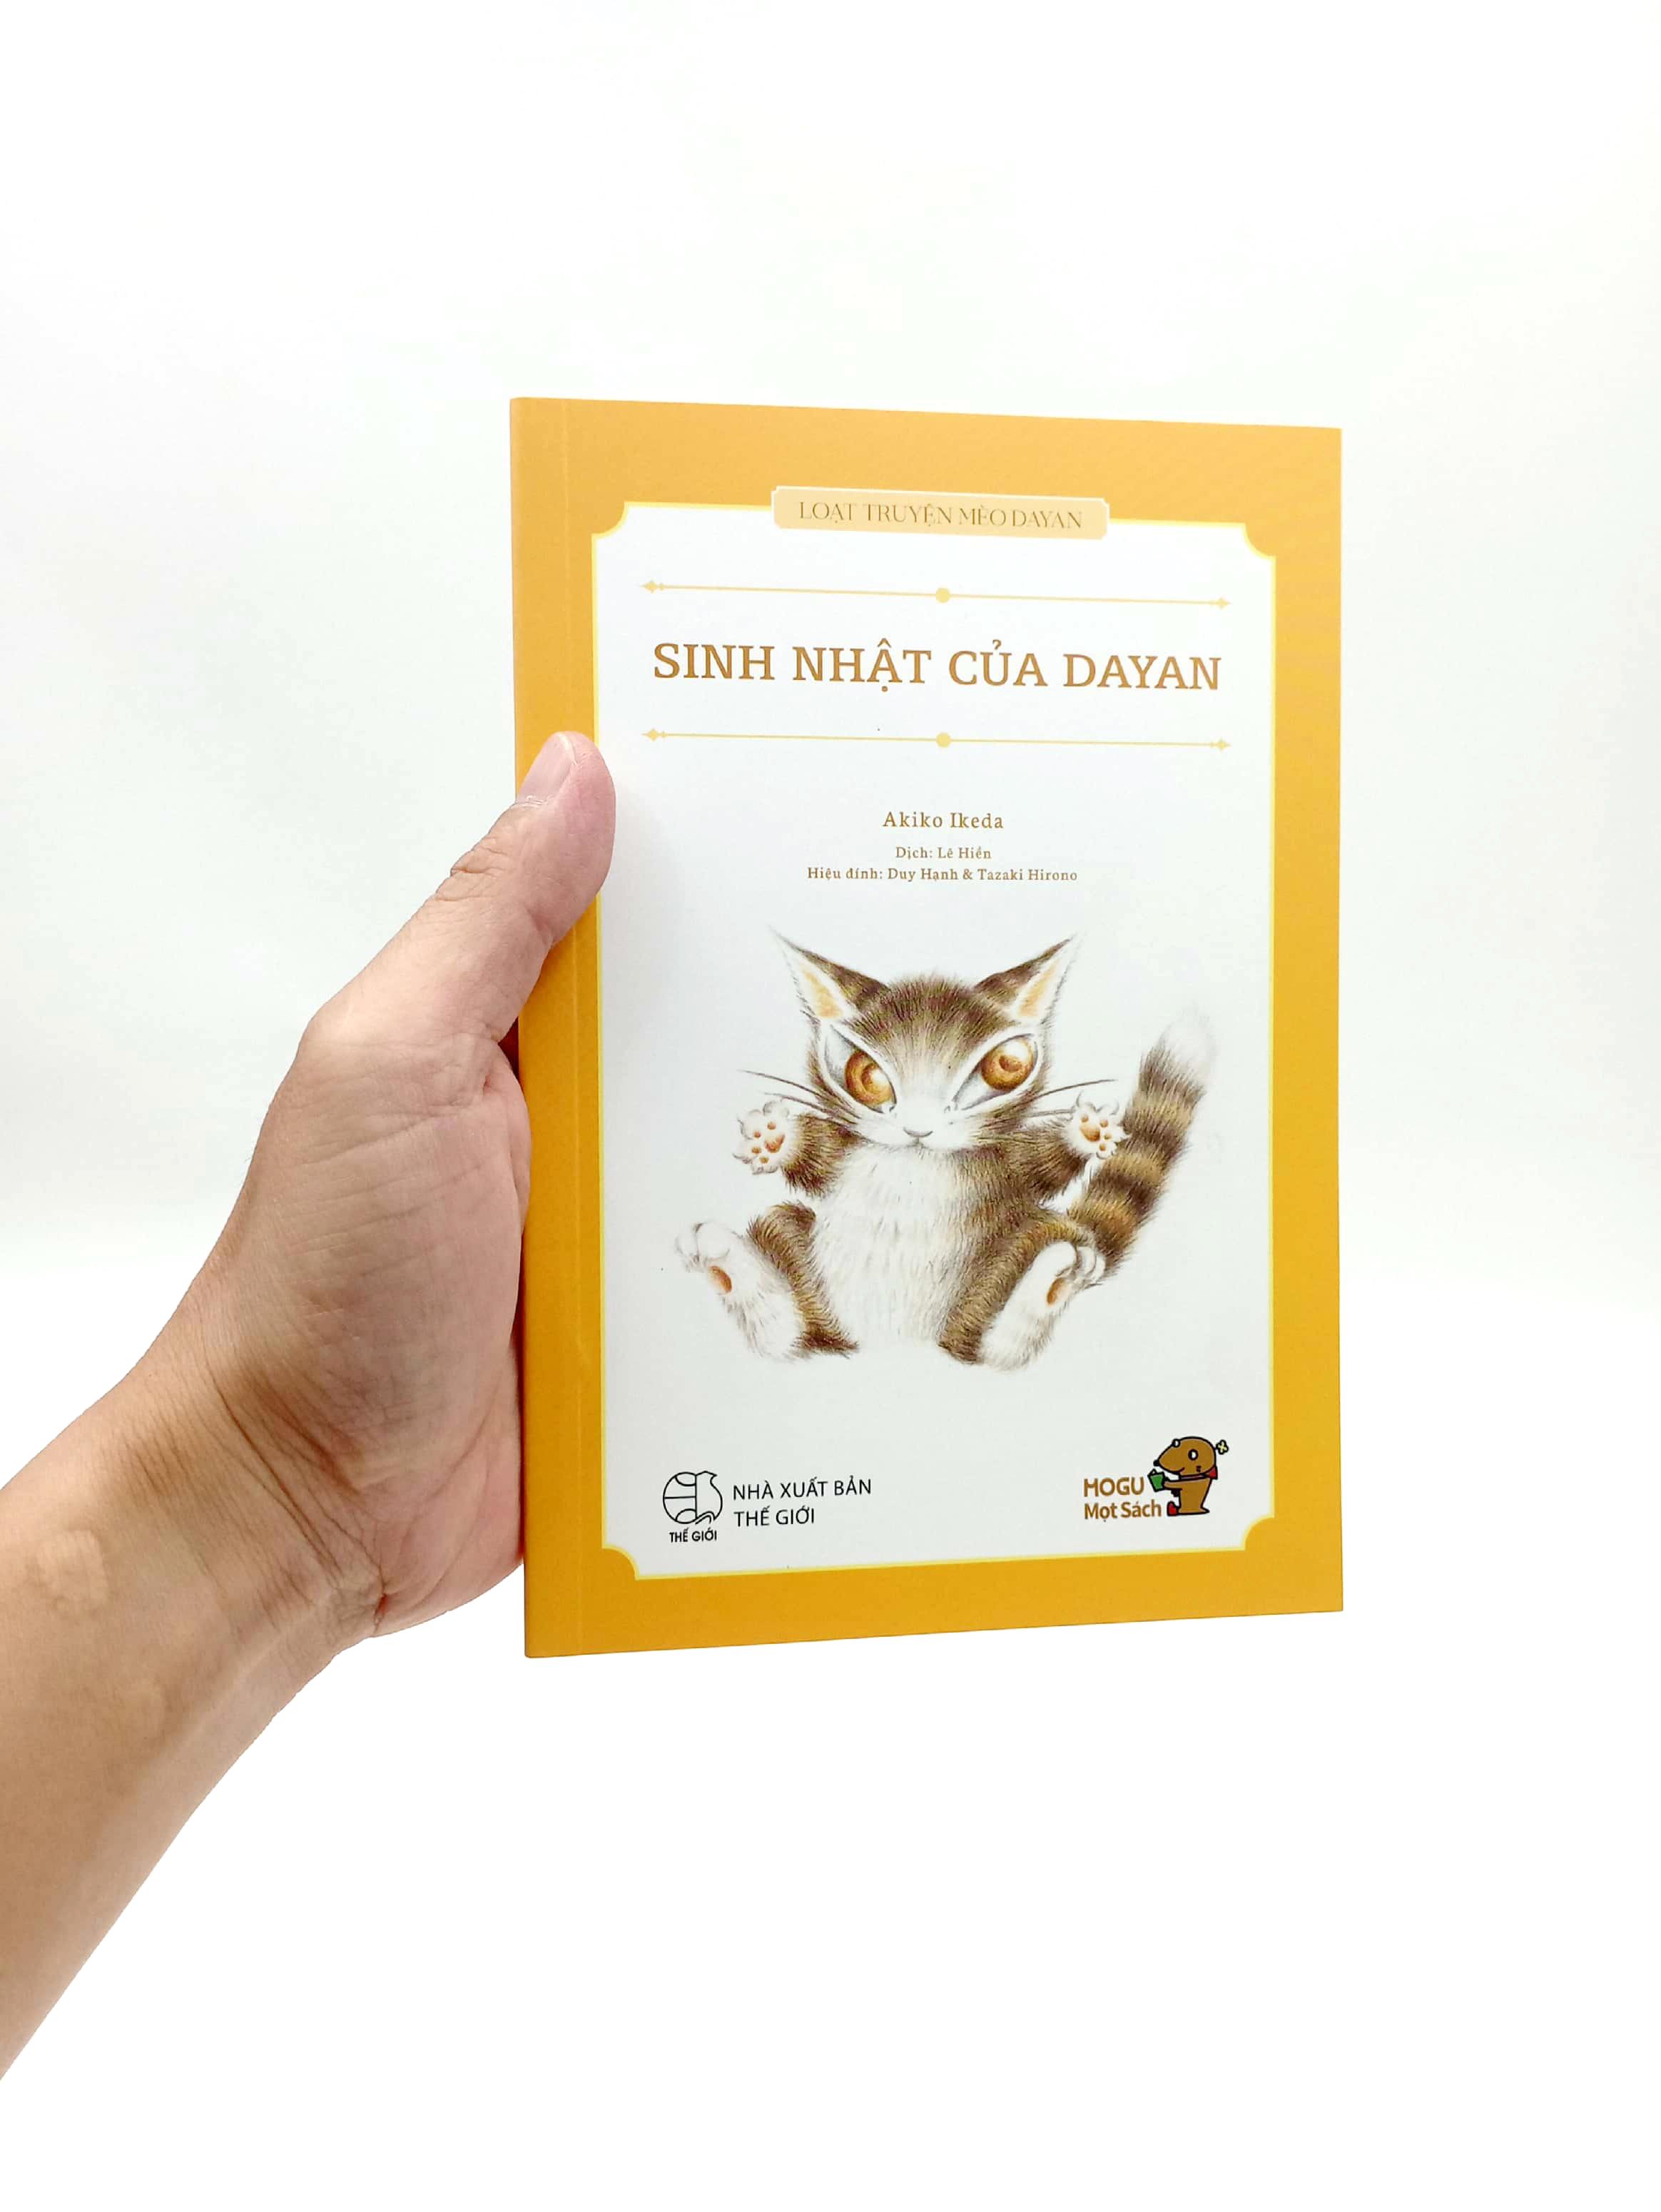 Mogu Mọt Sách - Loạt Truyện Mèo Dayan - Sinh Nhật Của Dayan